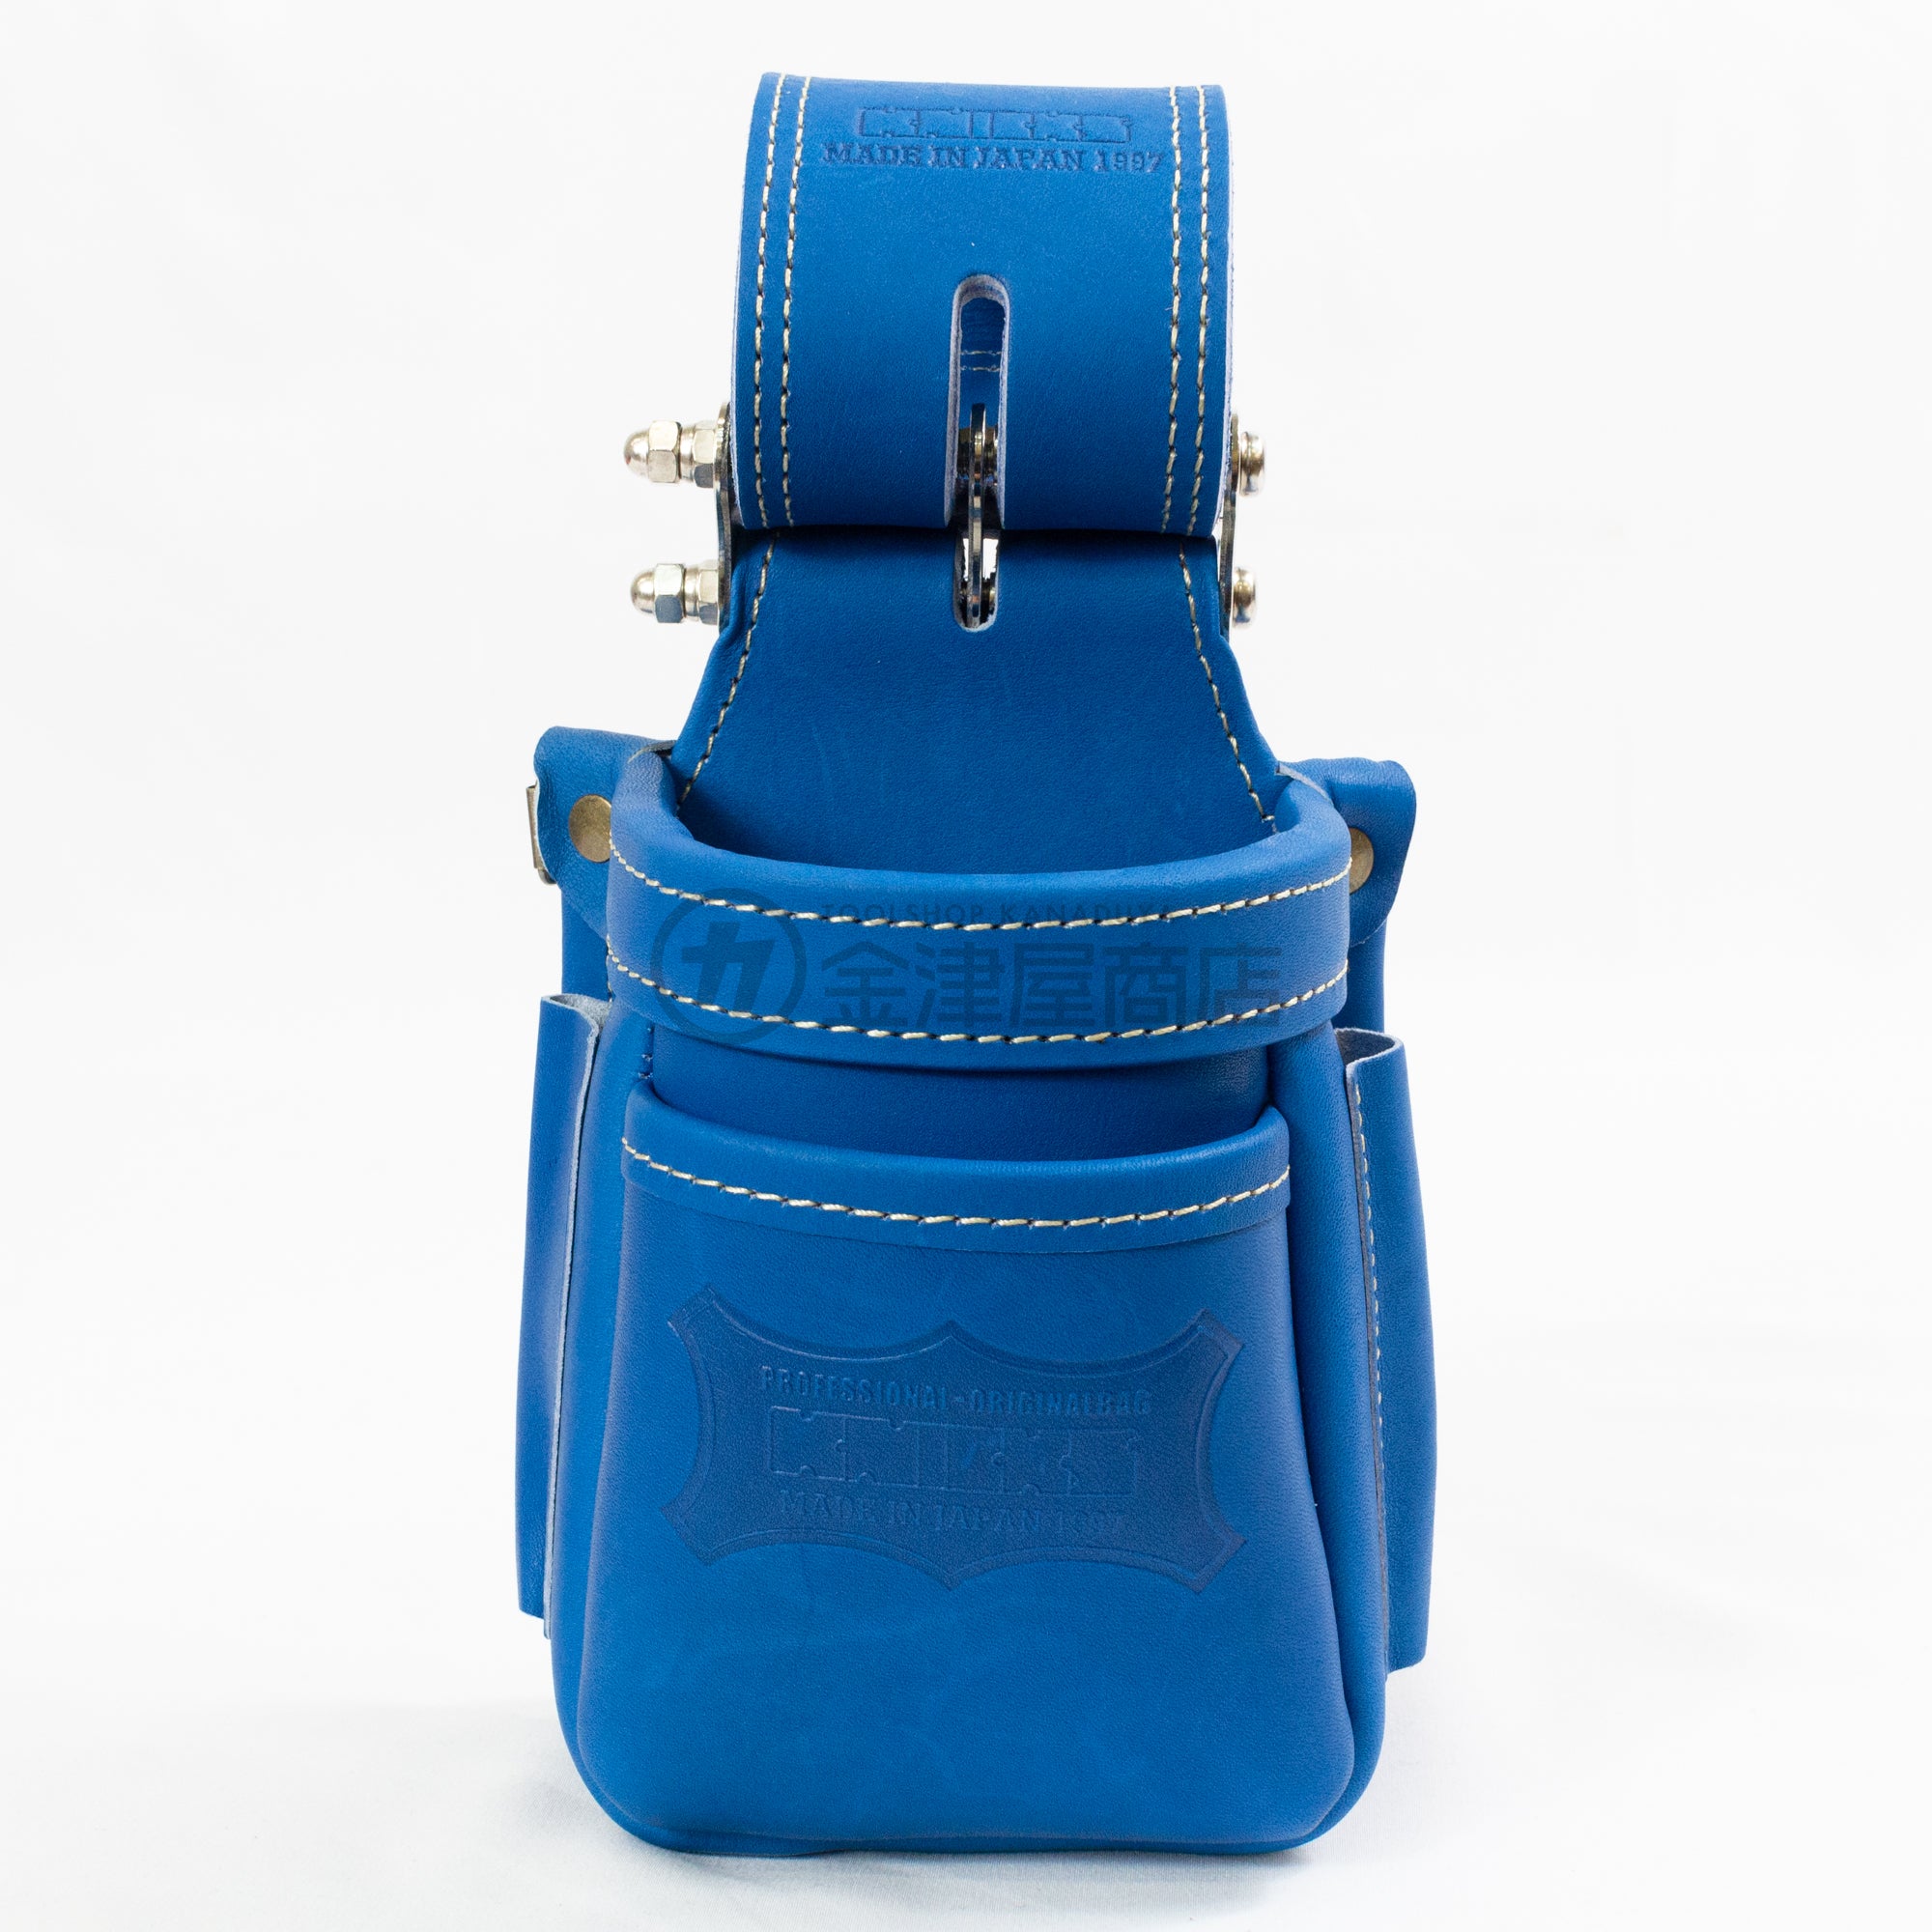 ニックス(KNICKS) 最高級硬式グローブ革小物腰袋 チェーンタイプ ブルー/レッド